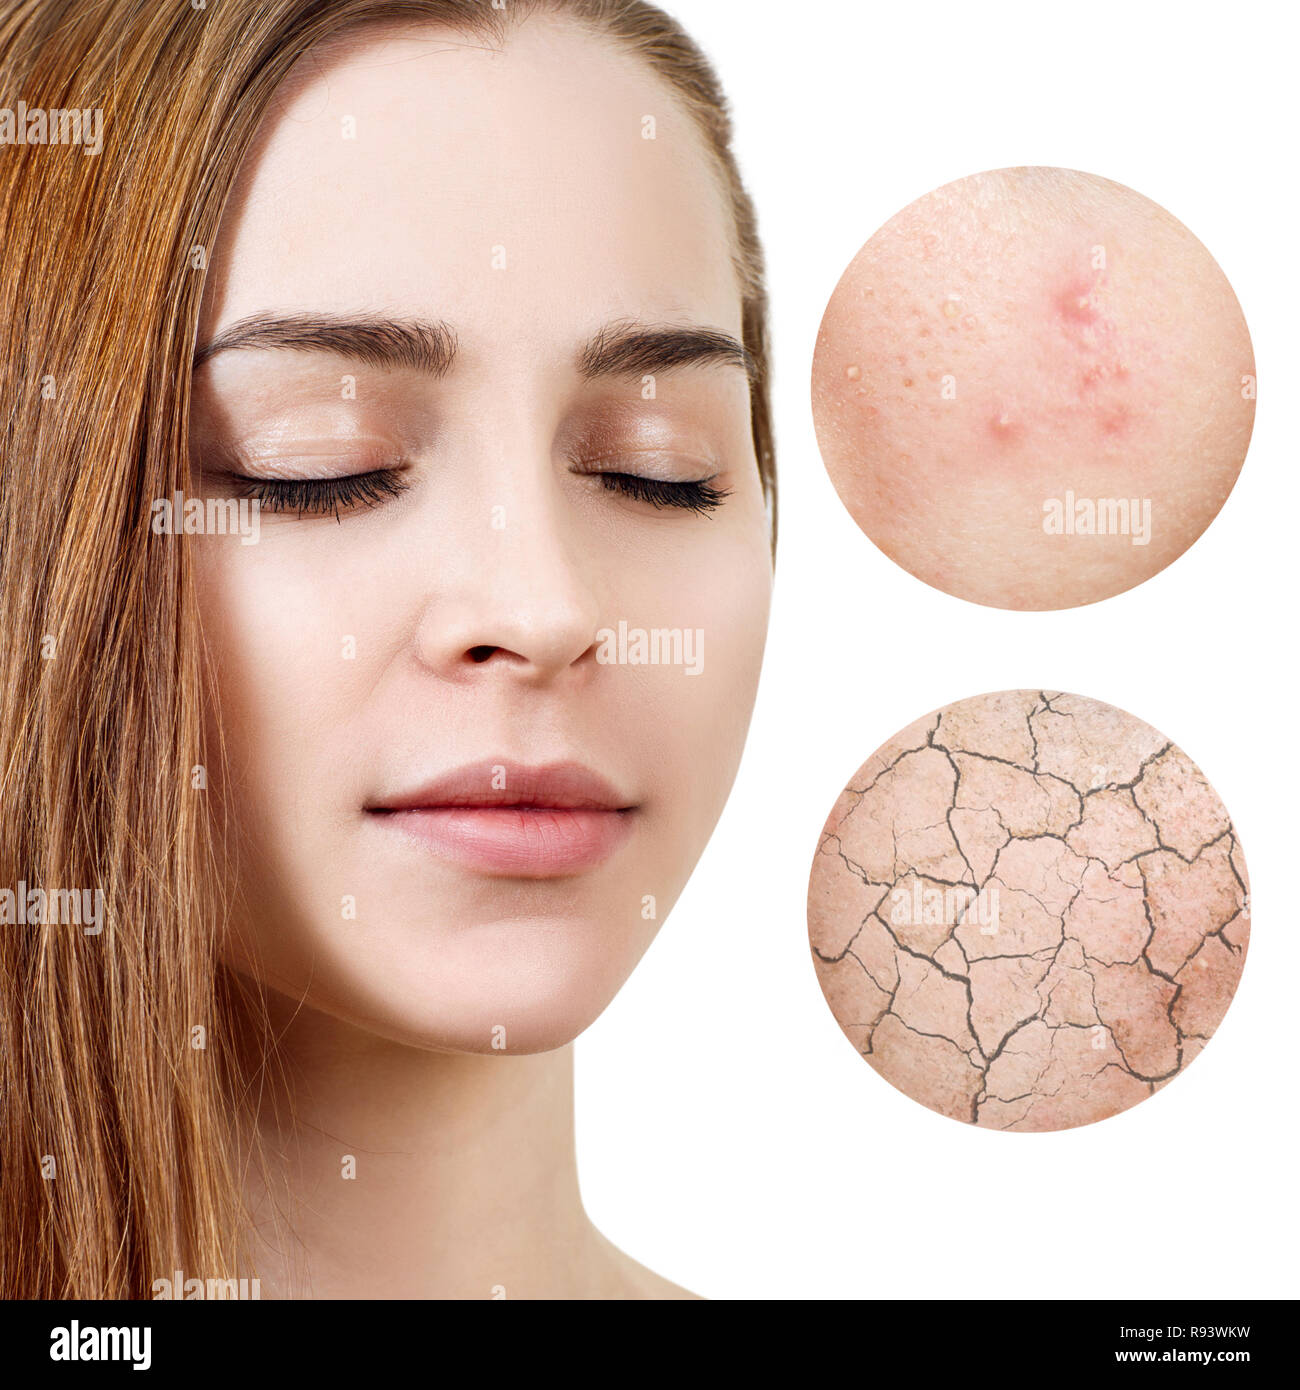 Zoom Kreise zeigt Problem Haut der jungen Frau. Stockfoto